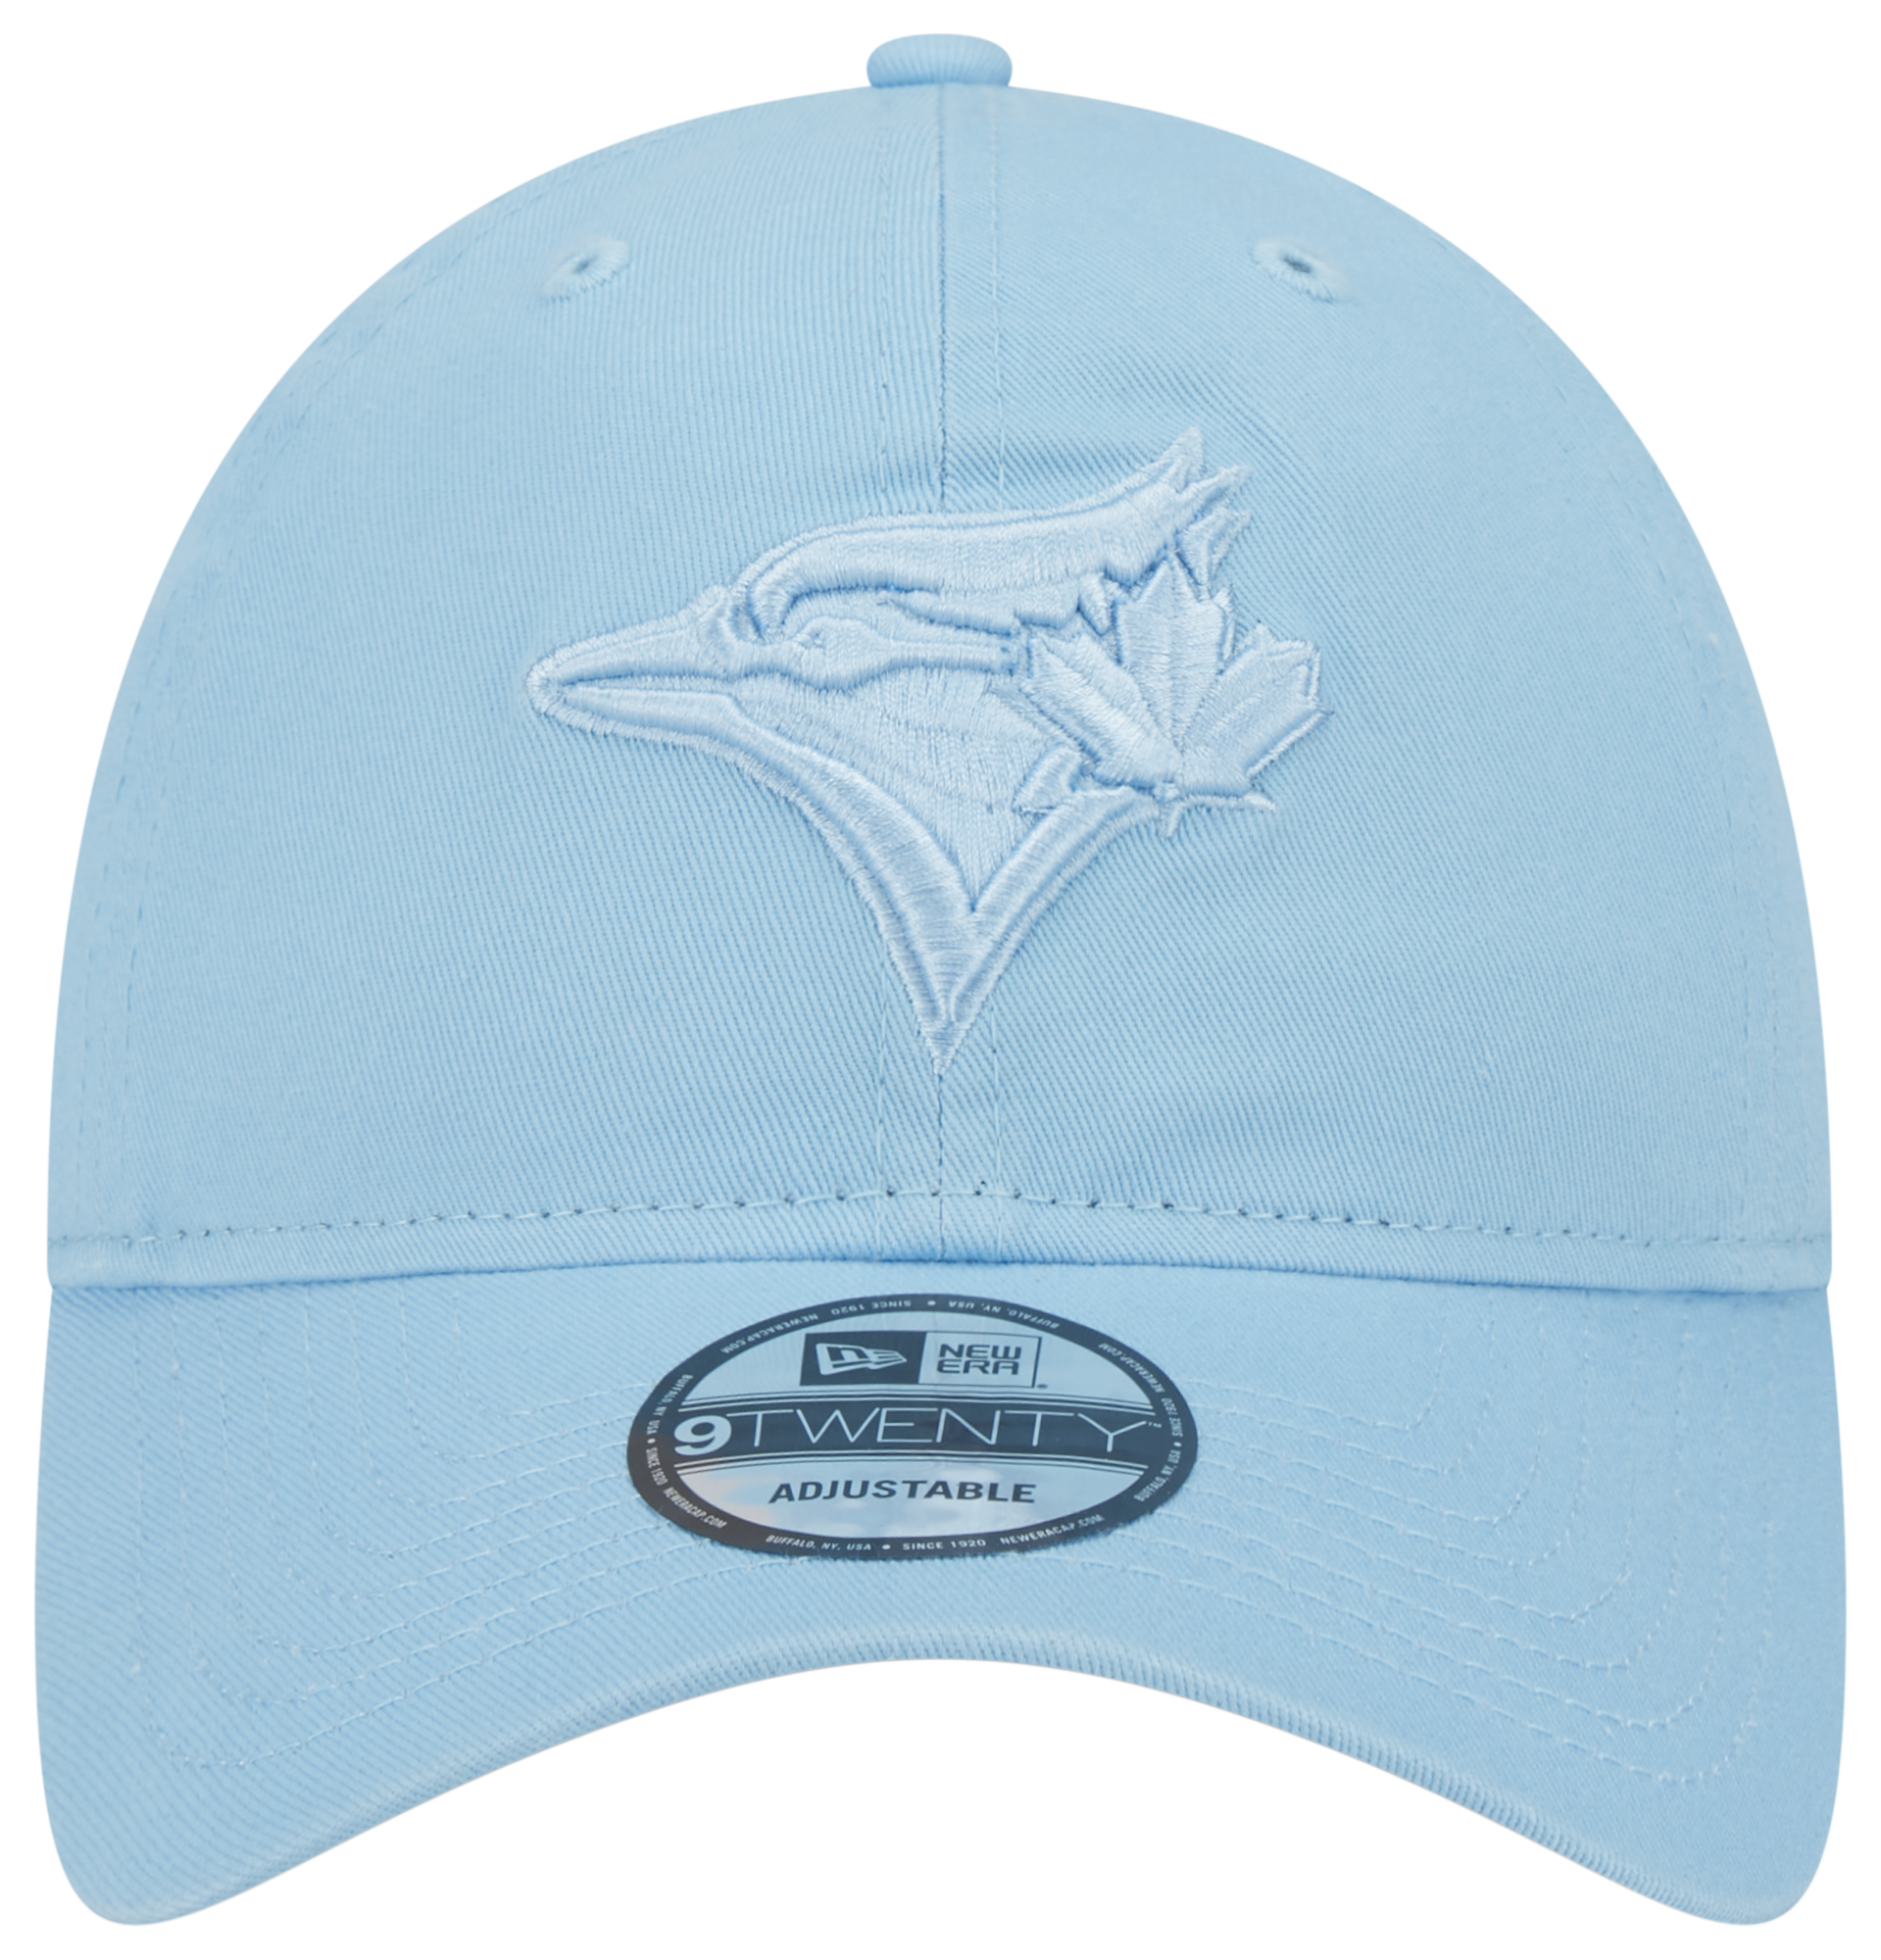 Vintage Toronto Blue Jays MLB Baseball Bucket Hat Blue and 